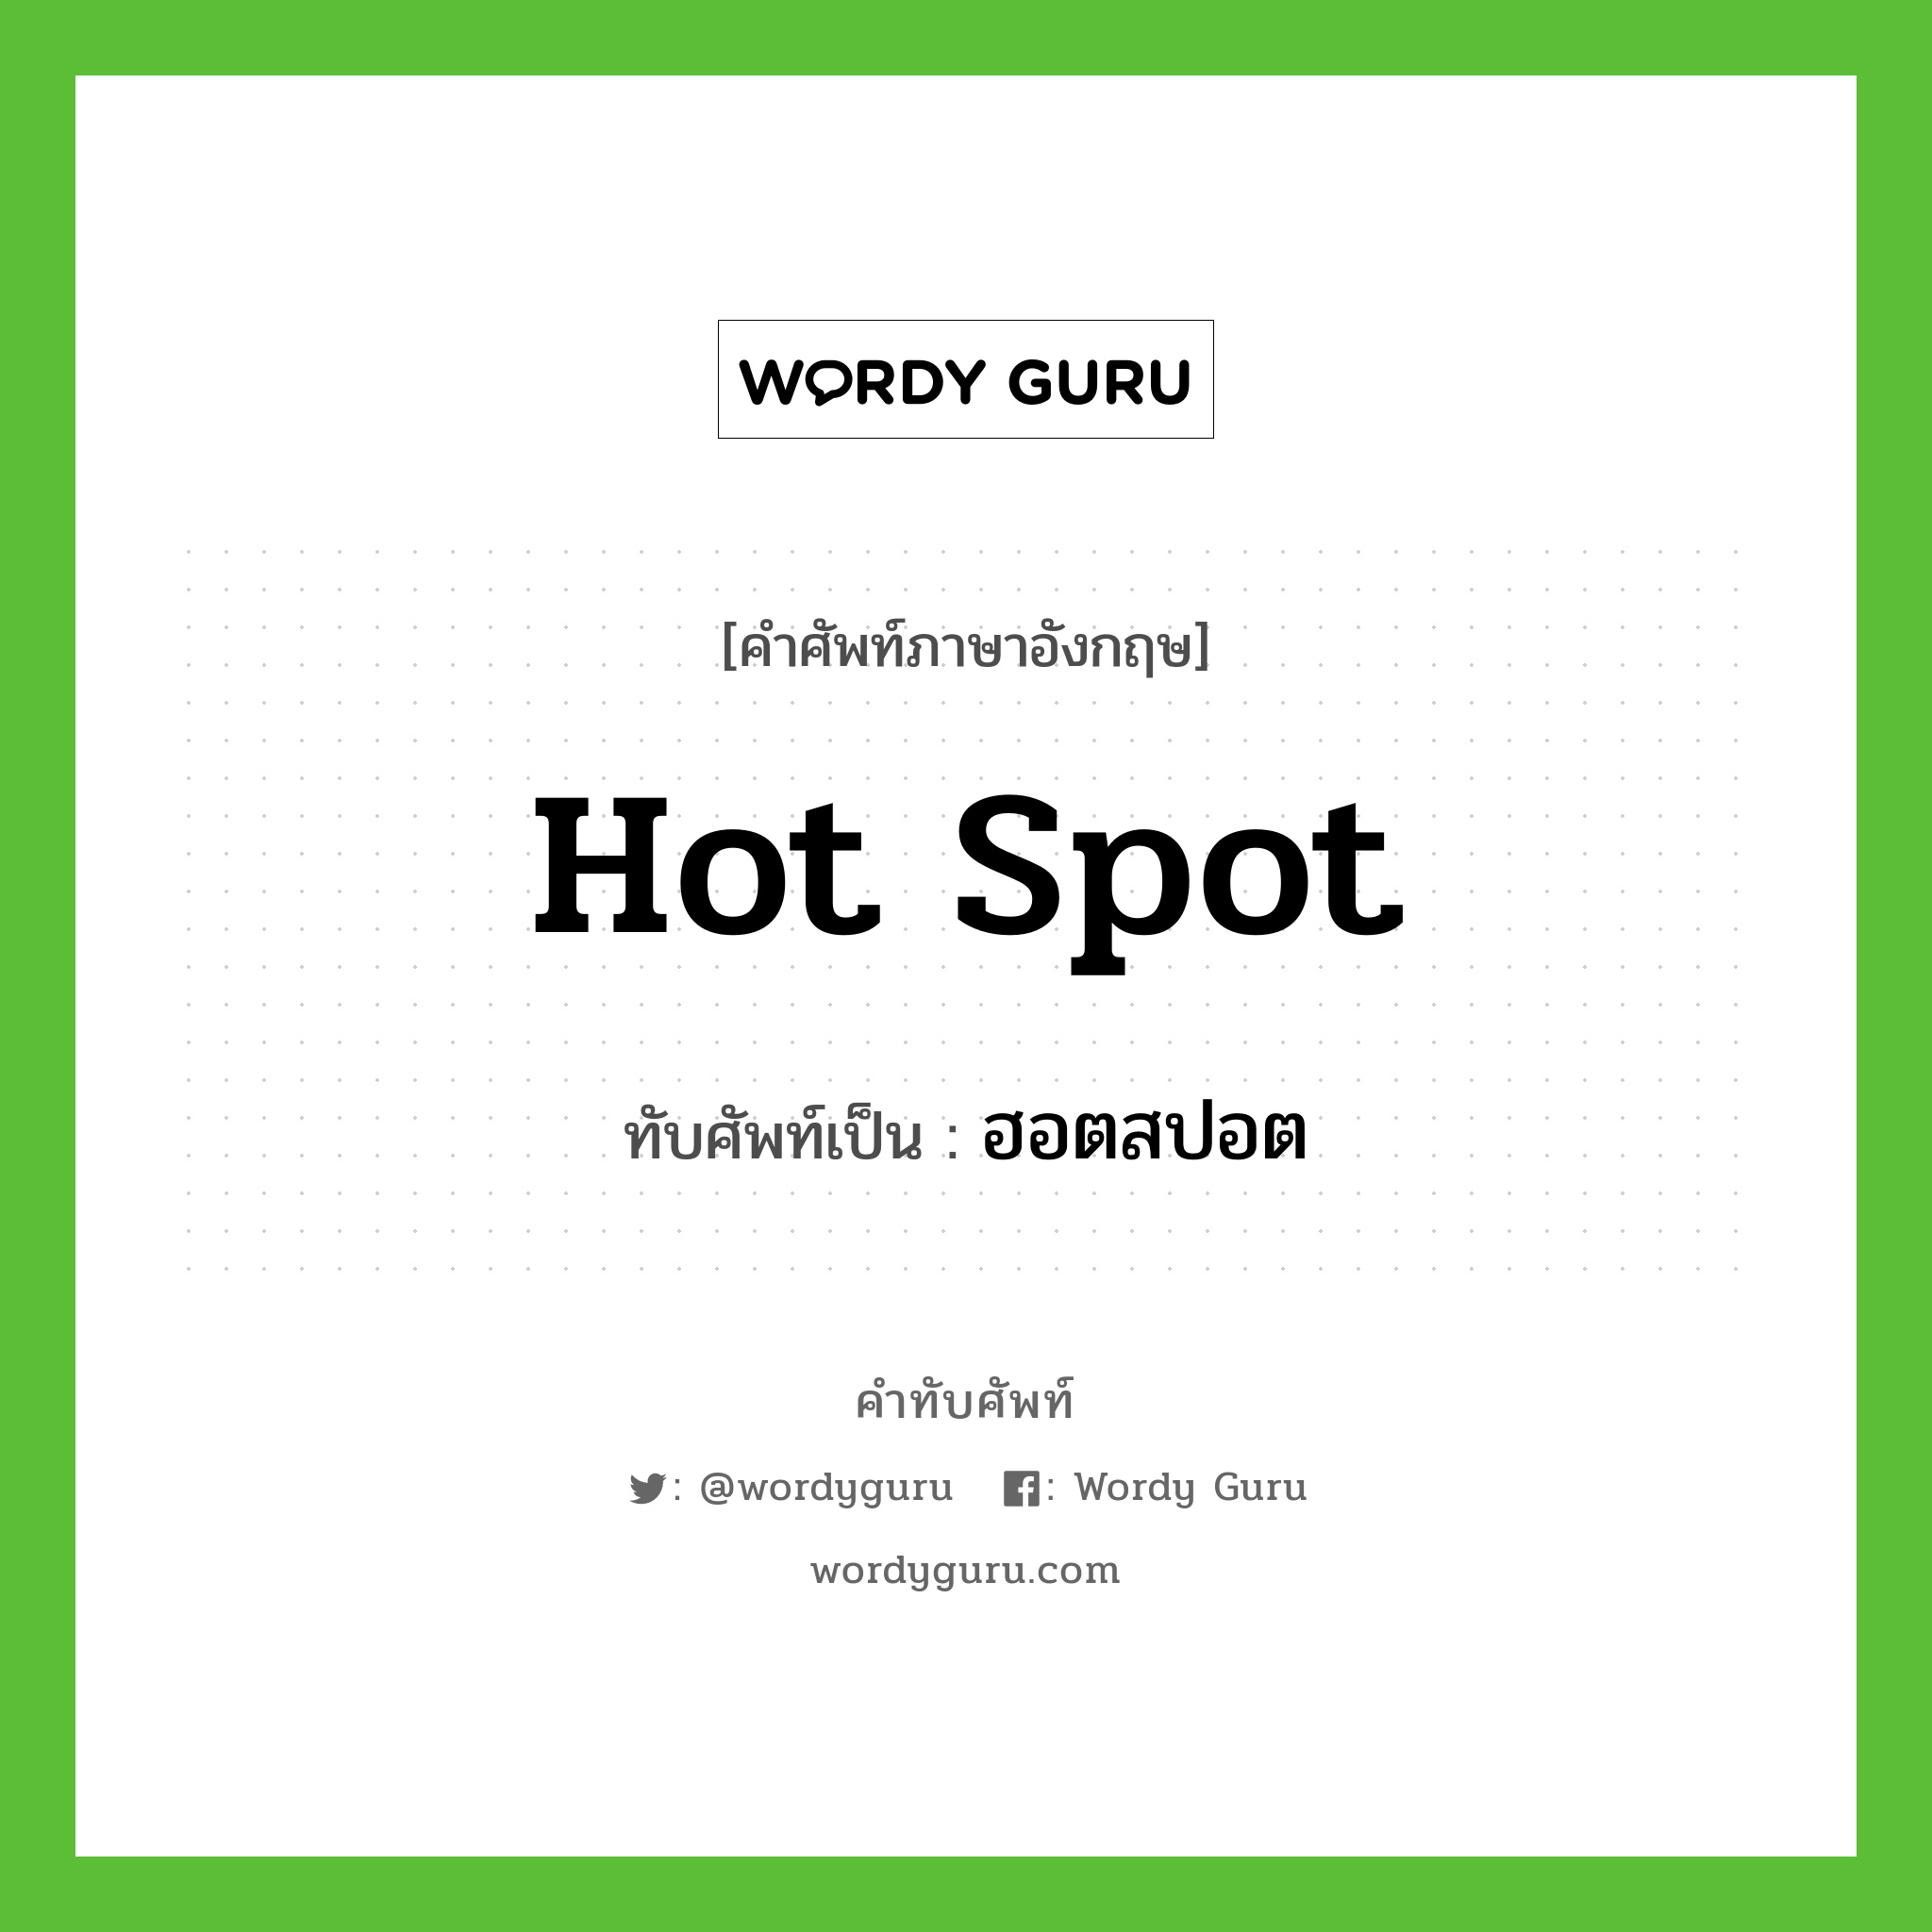 hot spot เขียนเป็นคำไทยว่าอะไร?, คำศัพท์ภาษาอังกฤษ hot spot ทับศัพท์เป็น ฮอตสปอต